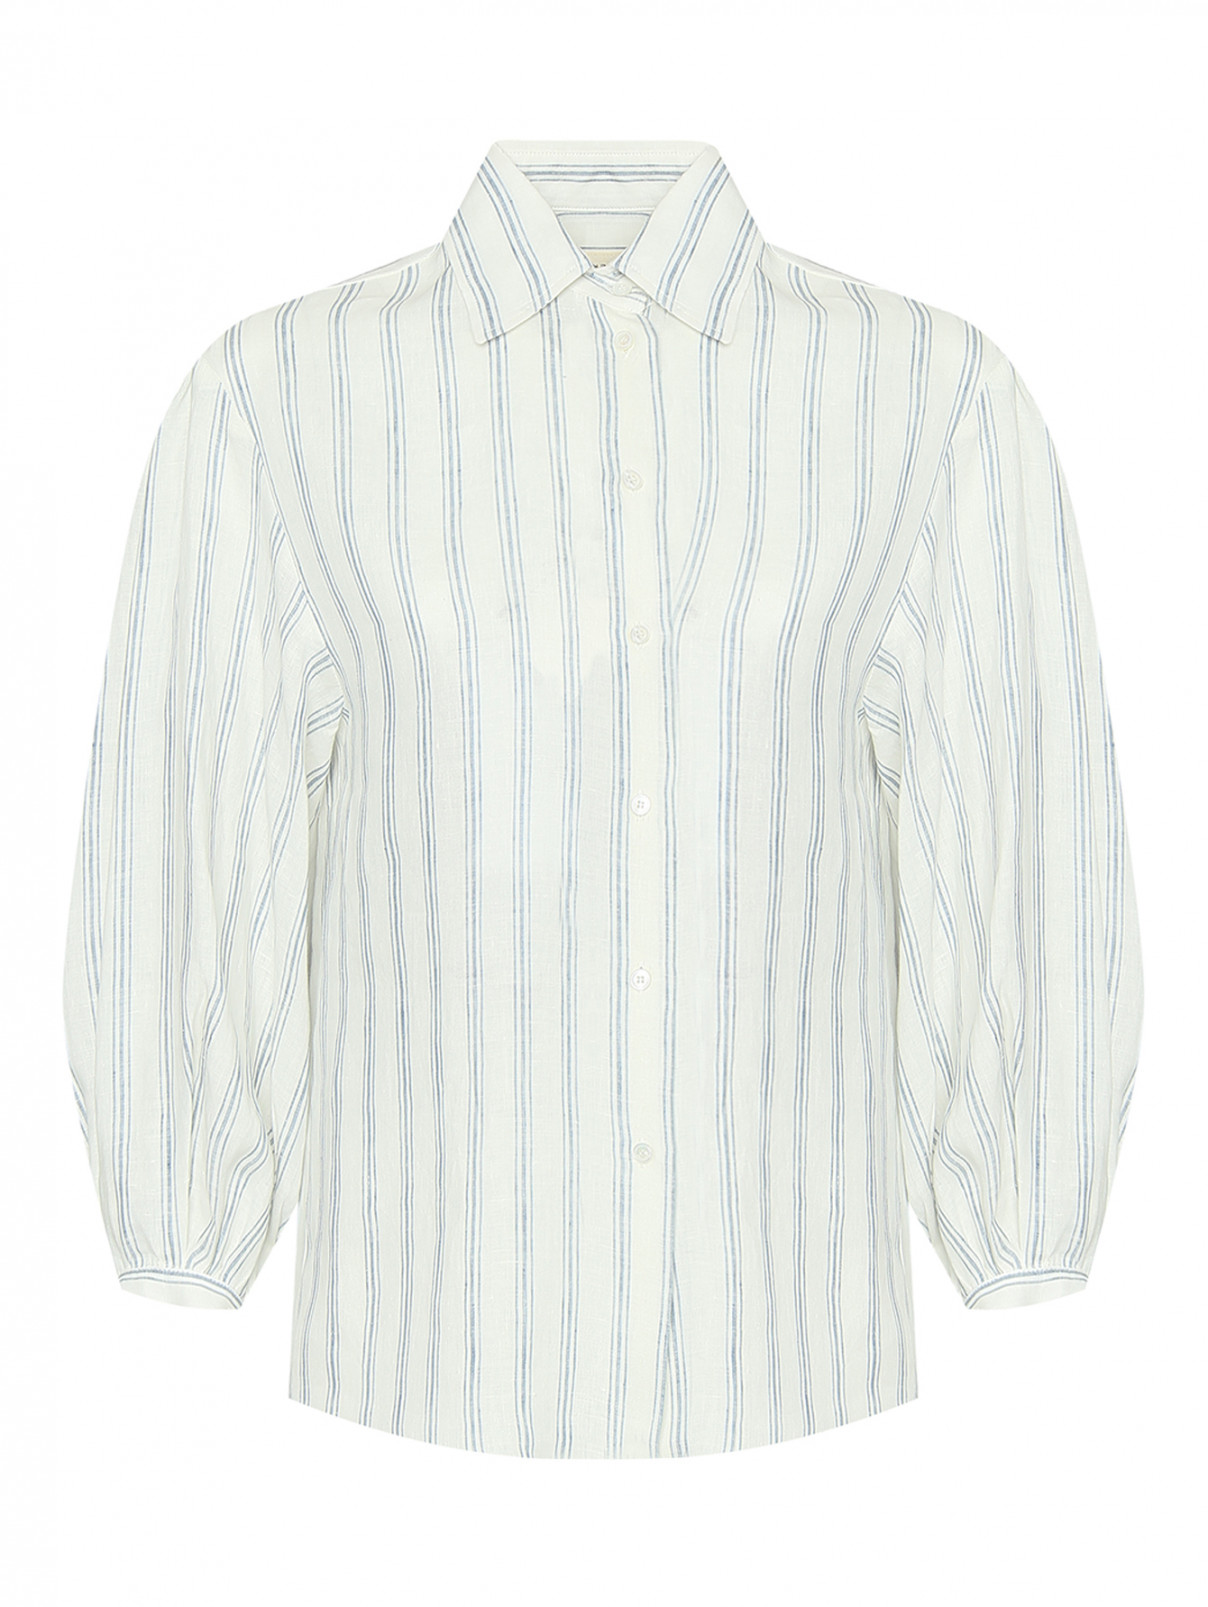 Льняная блуза в полоску Weekend Max Mara  –  Общий вид  – Цвет:  Узор